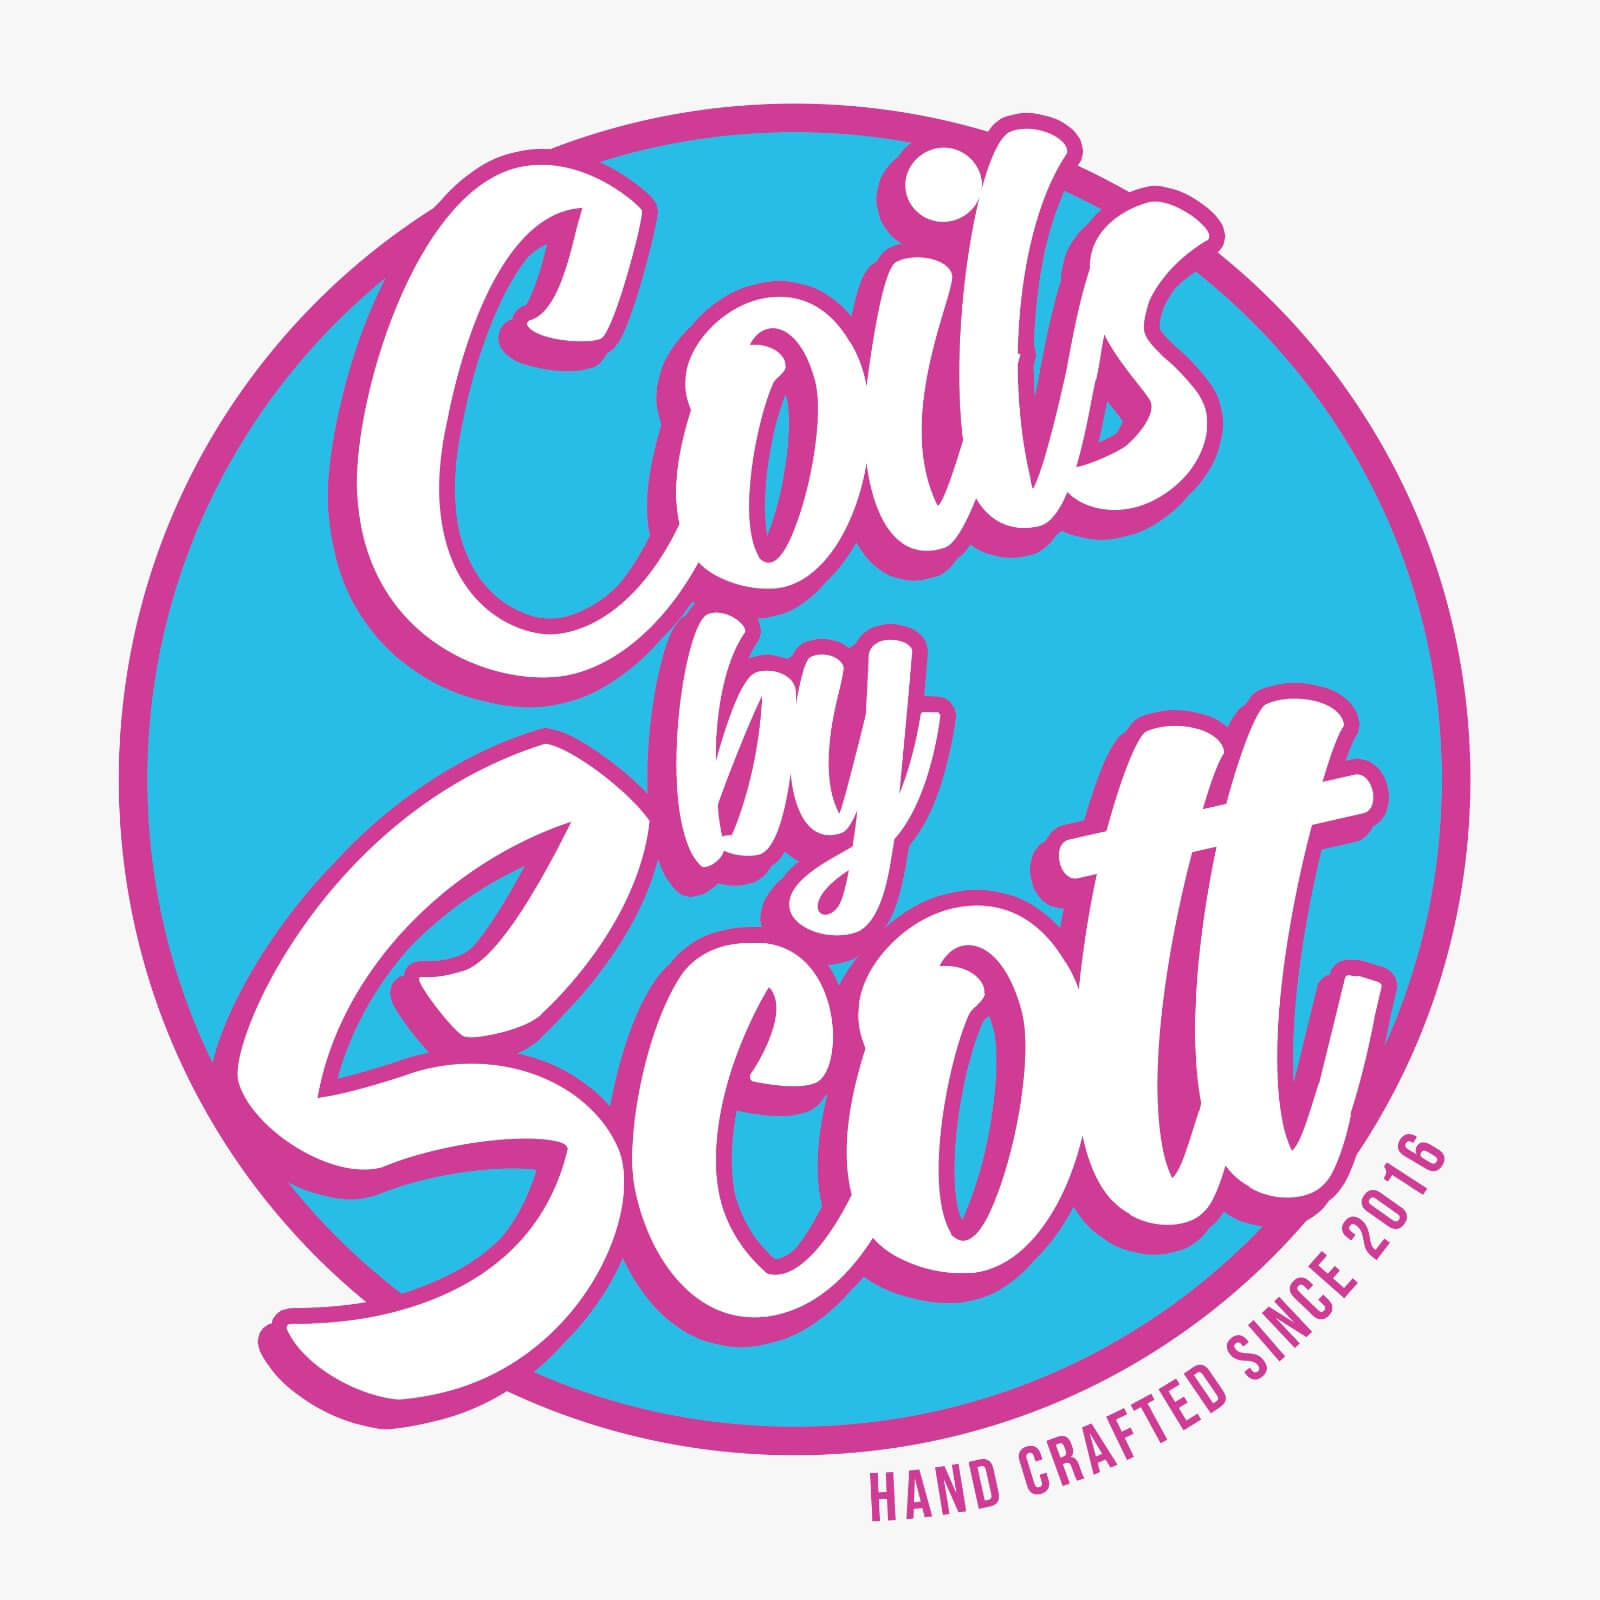 Coils by scott logo uk